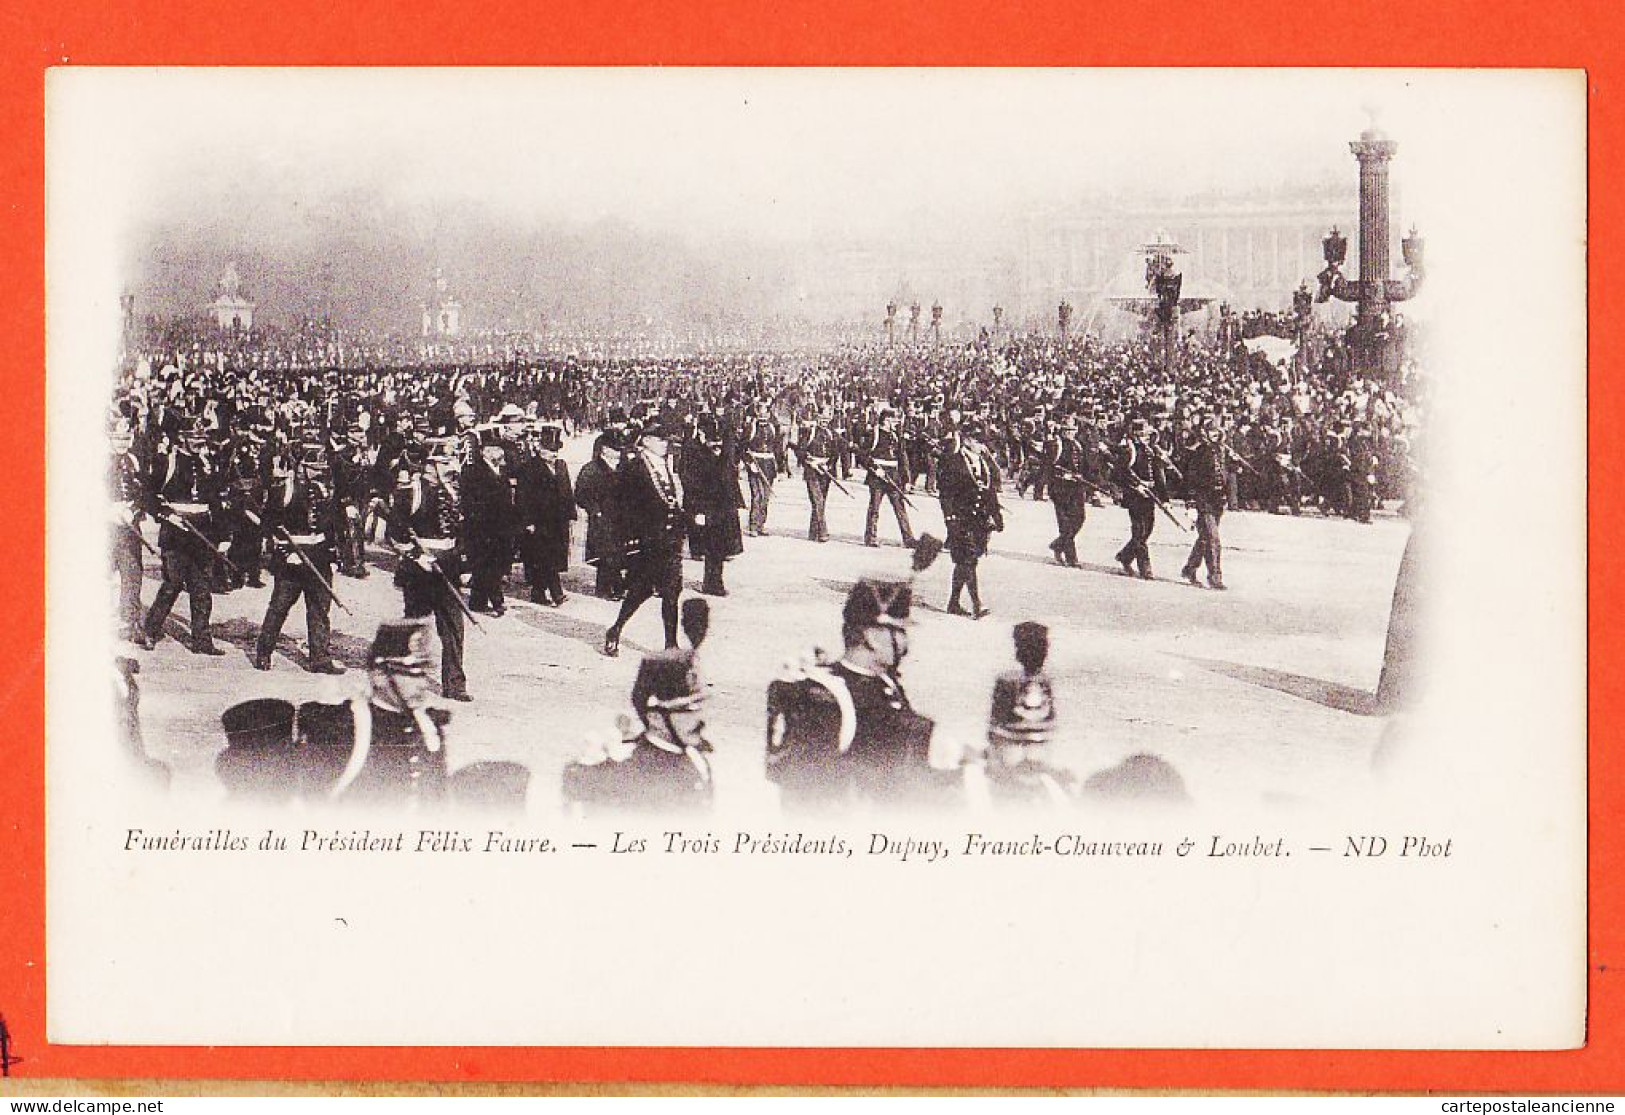 29106 / ⭐ Peu Commun PARIS 23 FEVRIER 1899 Funerailles Président FELIX FAURE 3 Présidents DUPUY FRANCK-CHAUVEAU LOUBET  - Funérailles